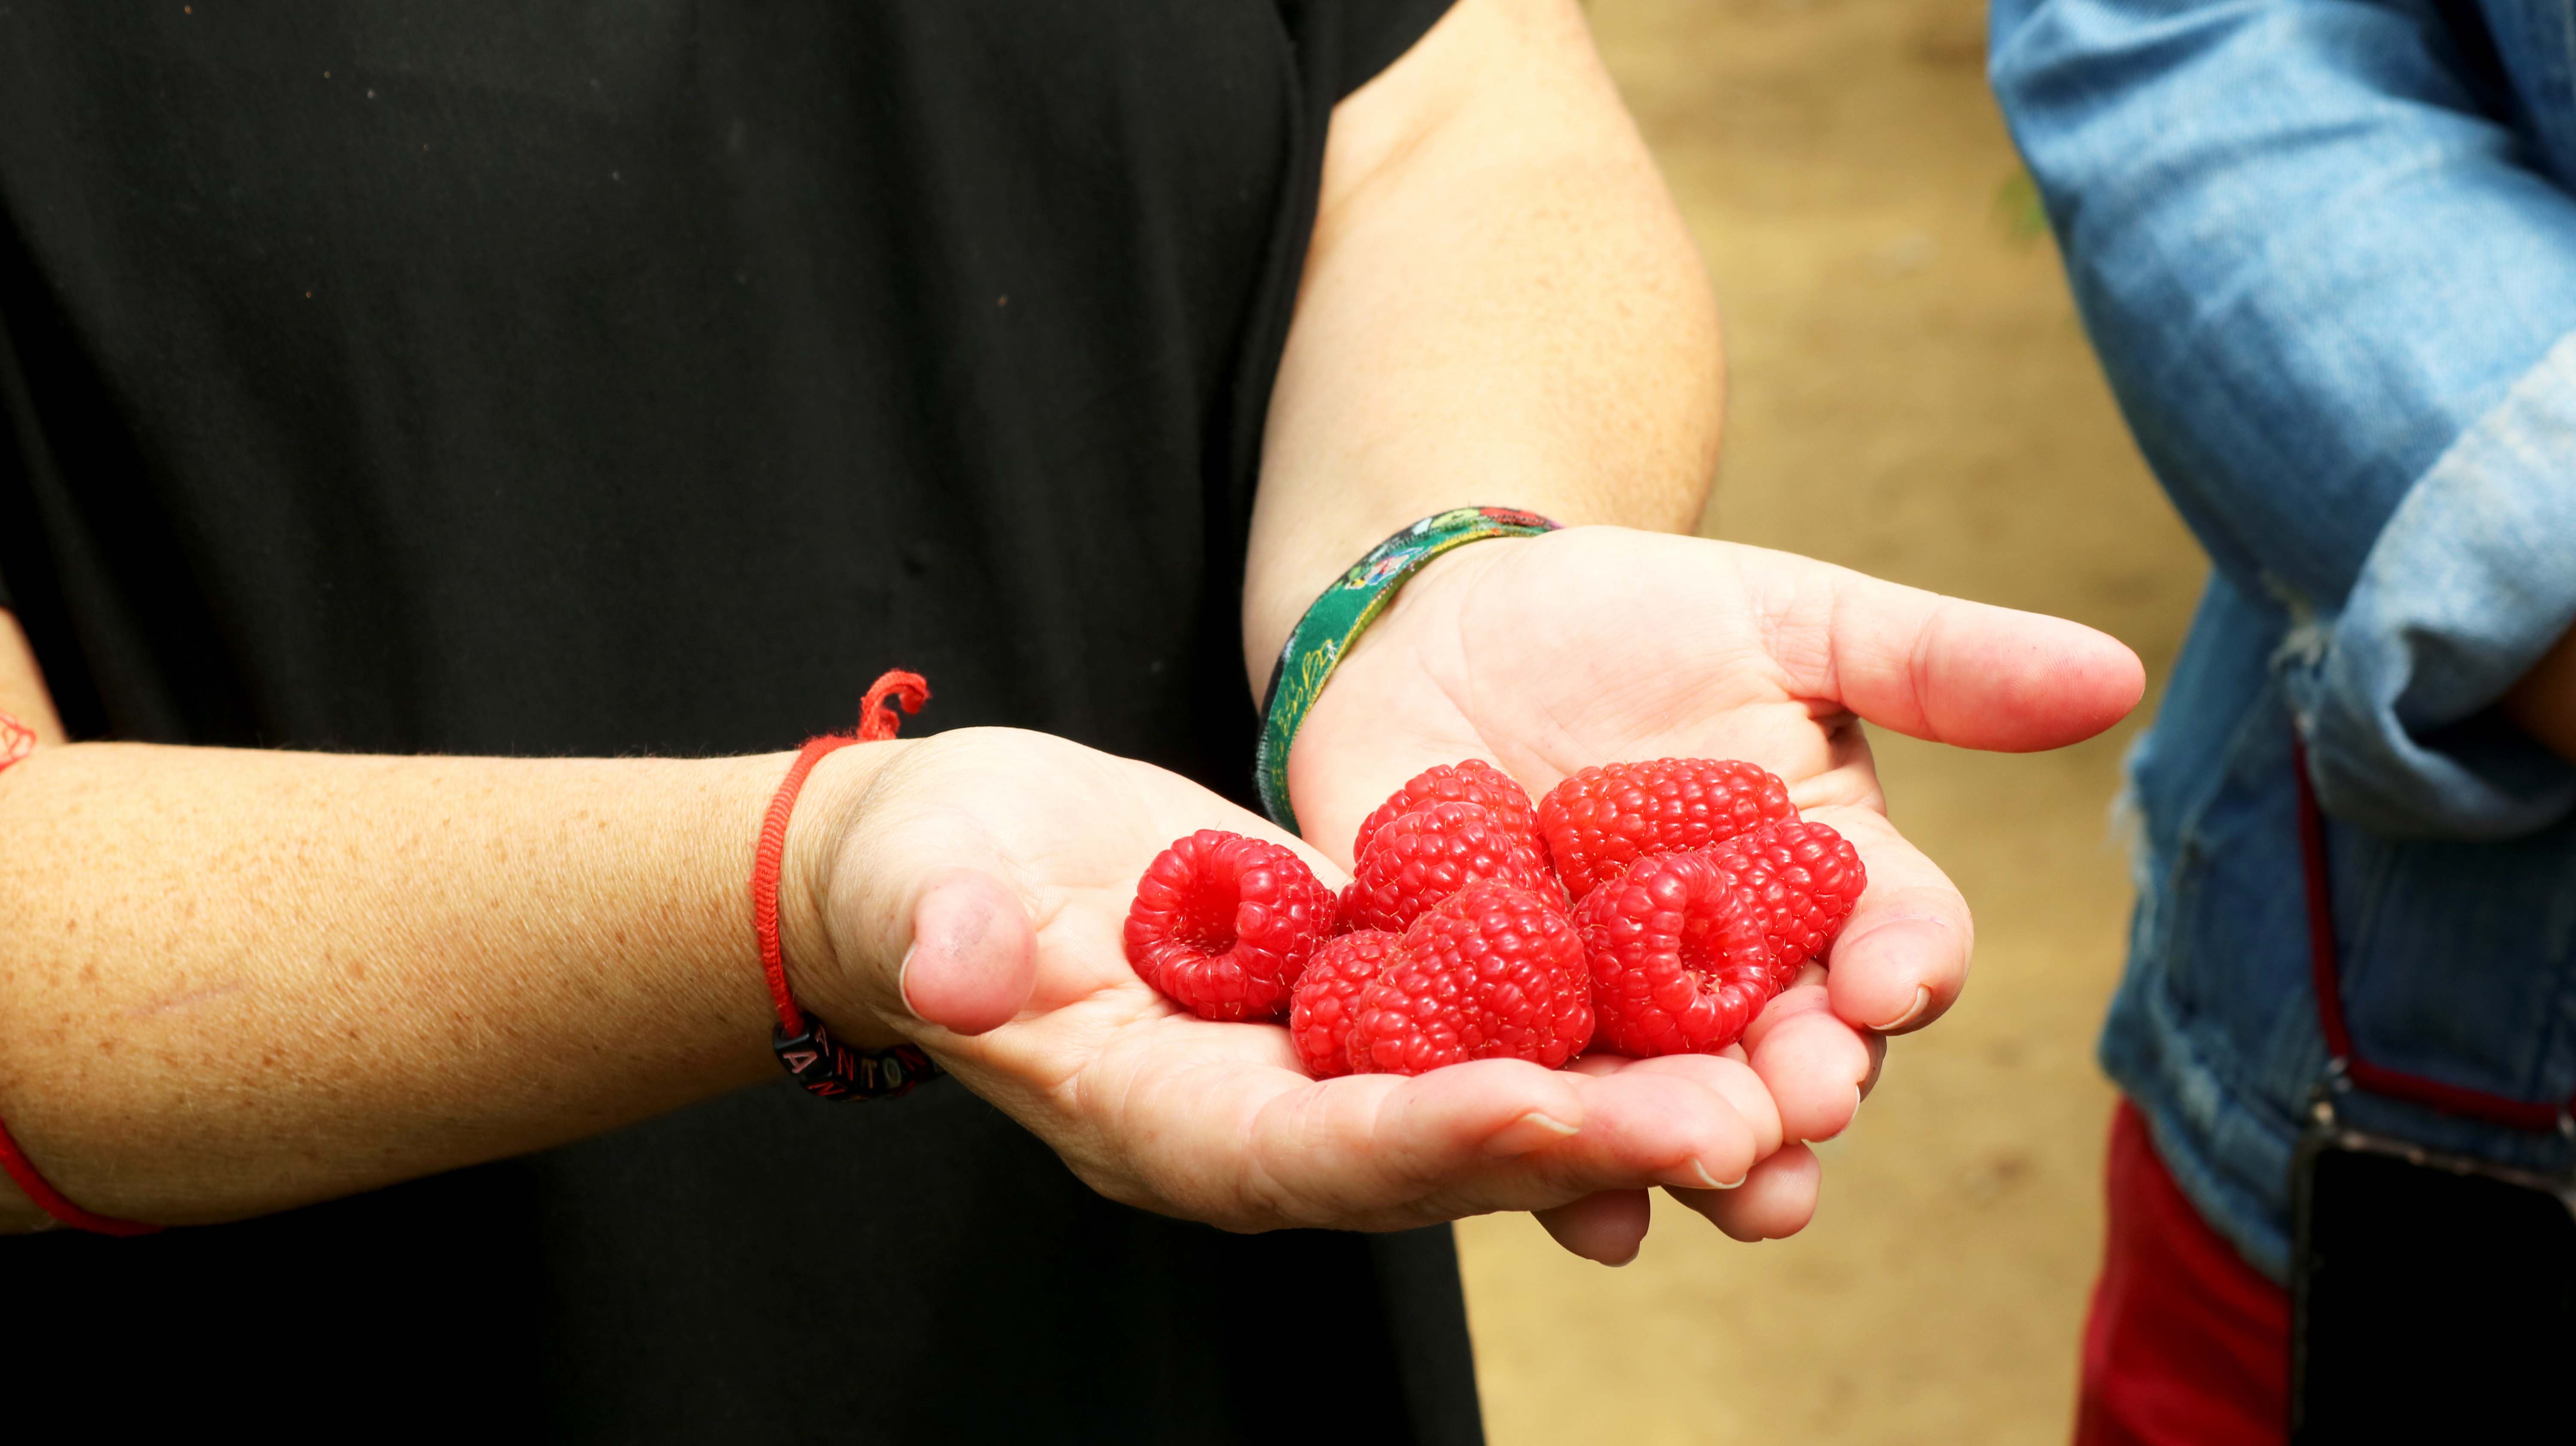 Visita al campo de ensayo de frutos rojos en La Redondela #FruitCare